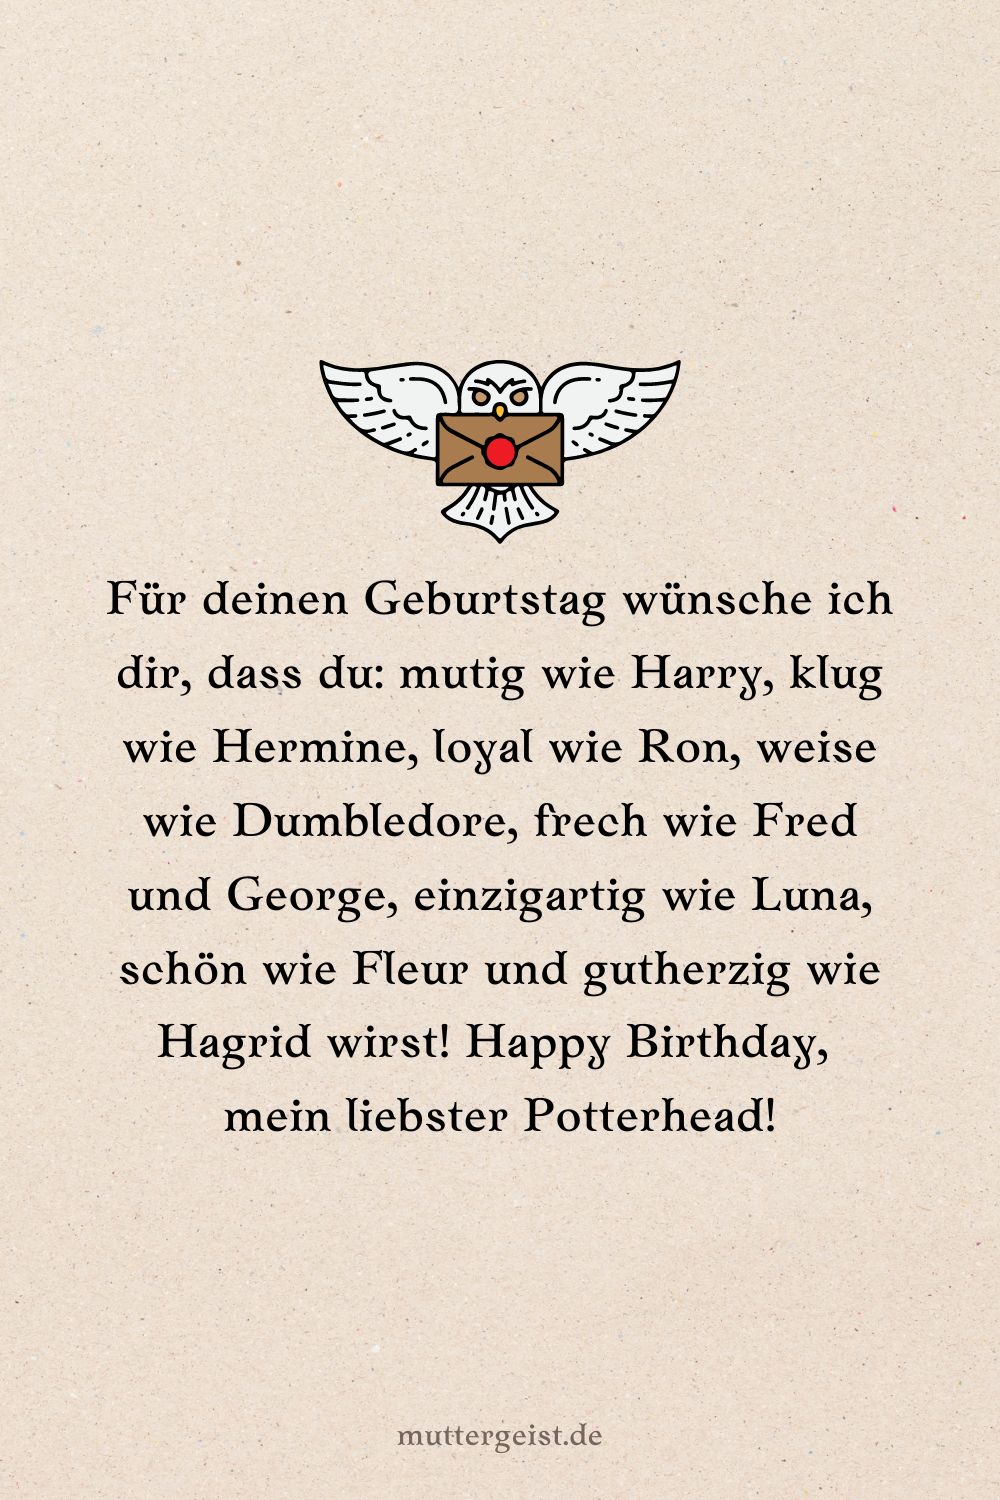 Happy Birthday, mein liebster Potterhead